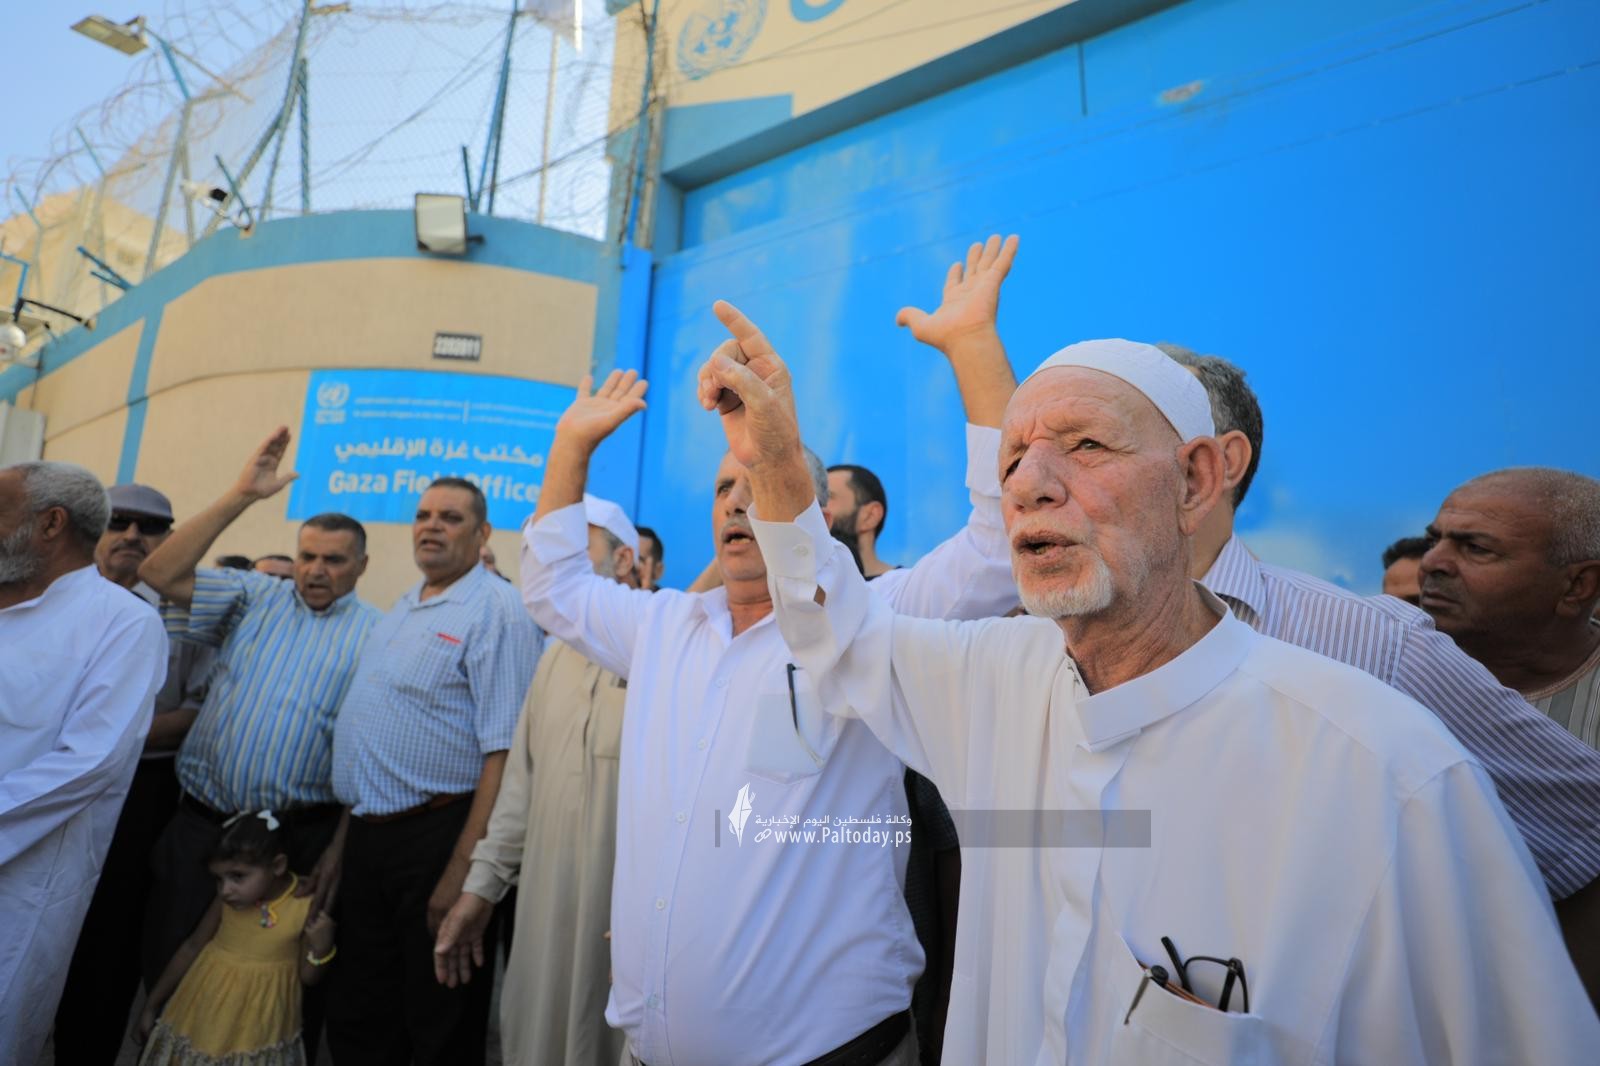 بالصور وقف احتجاجية لمتضرري عدوان الاحتلال أمام بوابة وكالة الغوث بغزة (1).jpeg